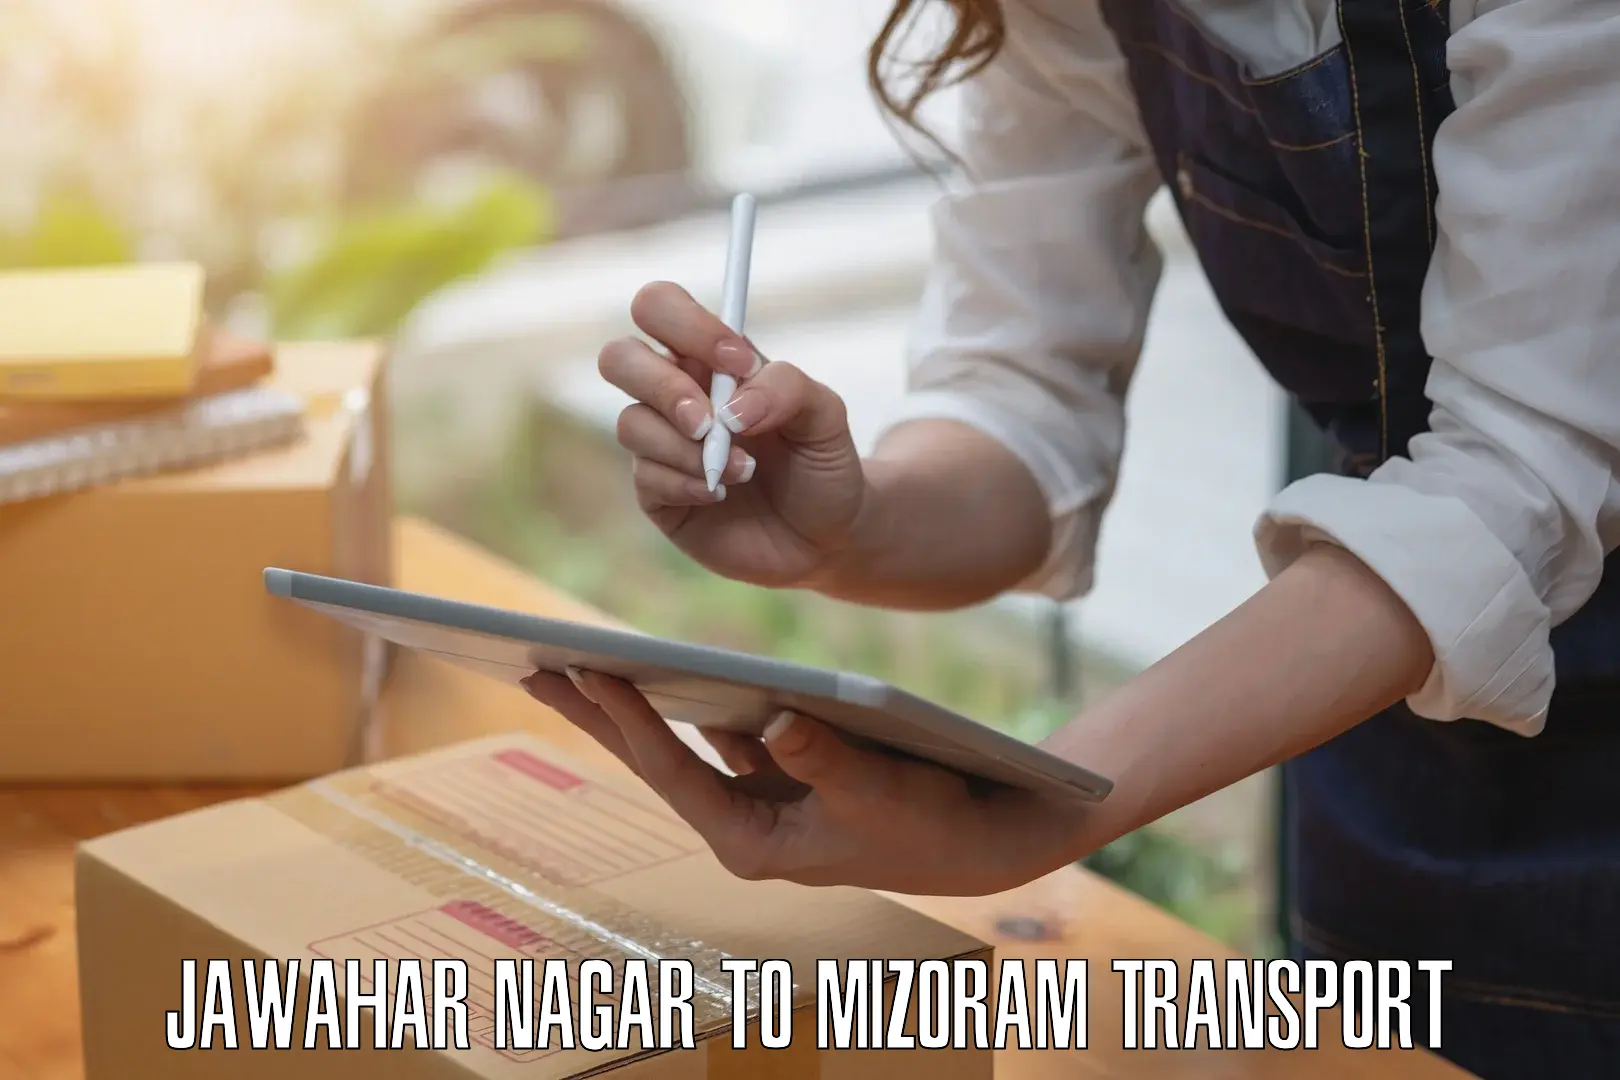 Daily transport service Jawahar Nagar to Aizawl